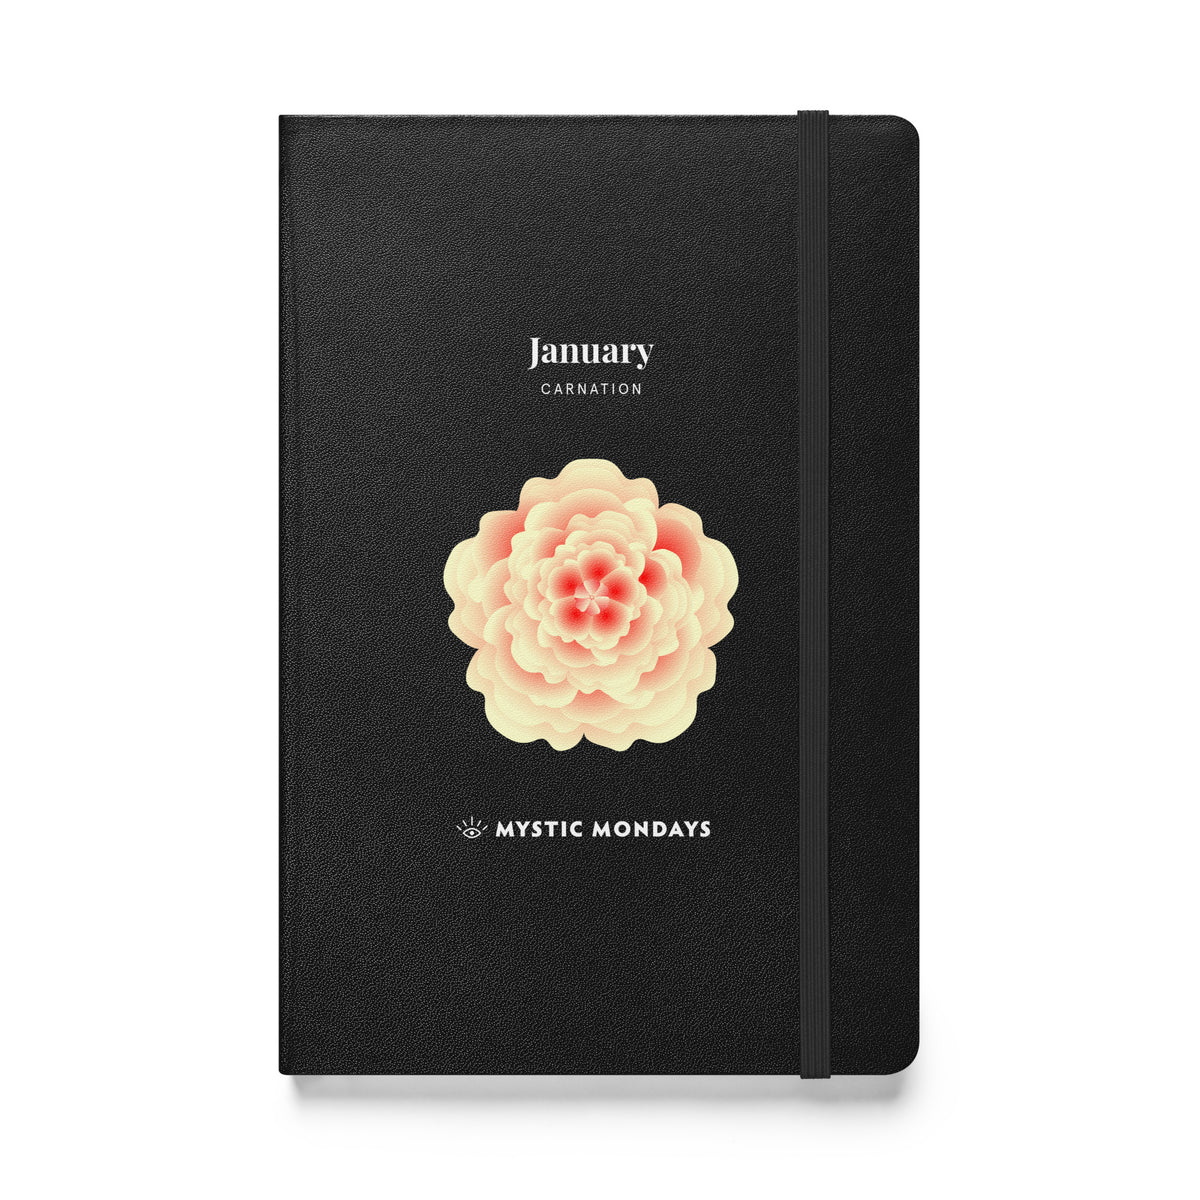 Carnation Hardcover Journal